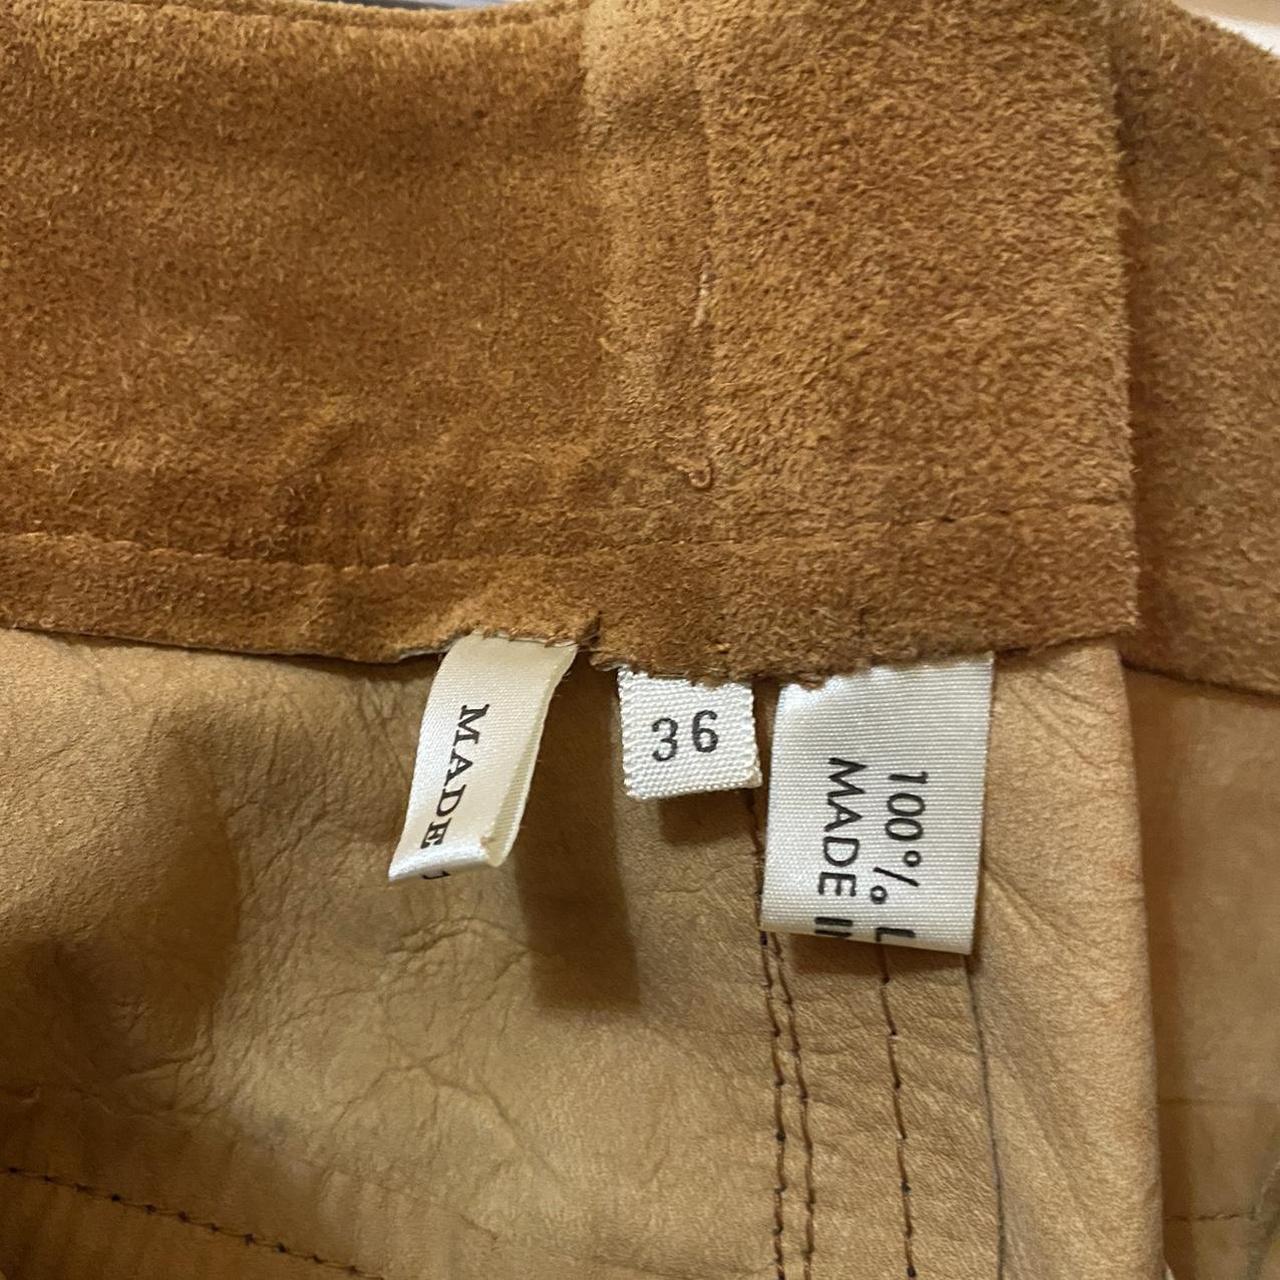 Vintage mens leather pants super 70s 🪩 missing the... - Depop